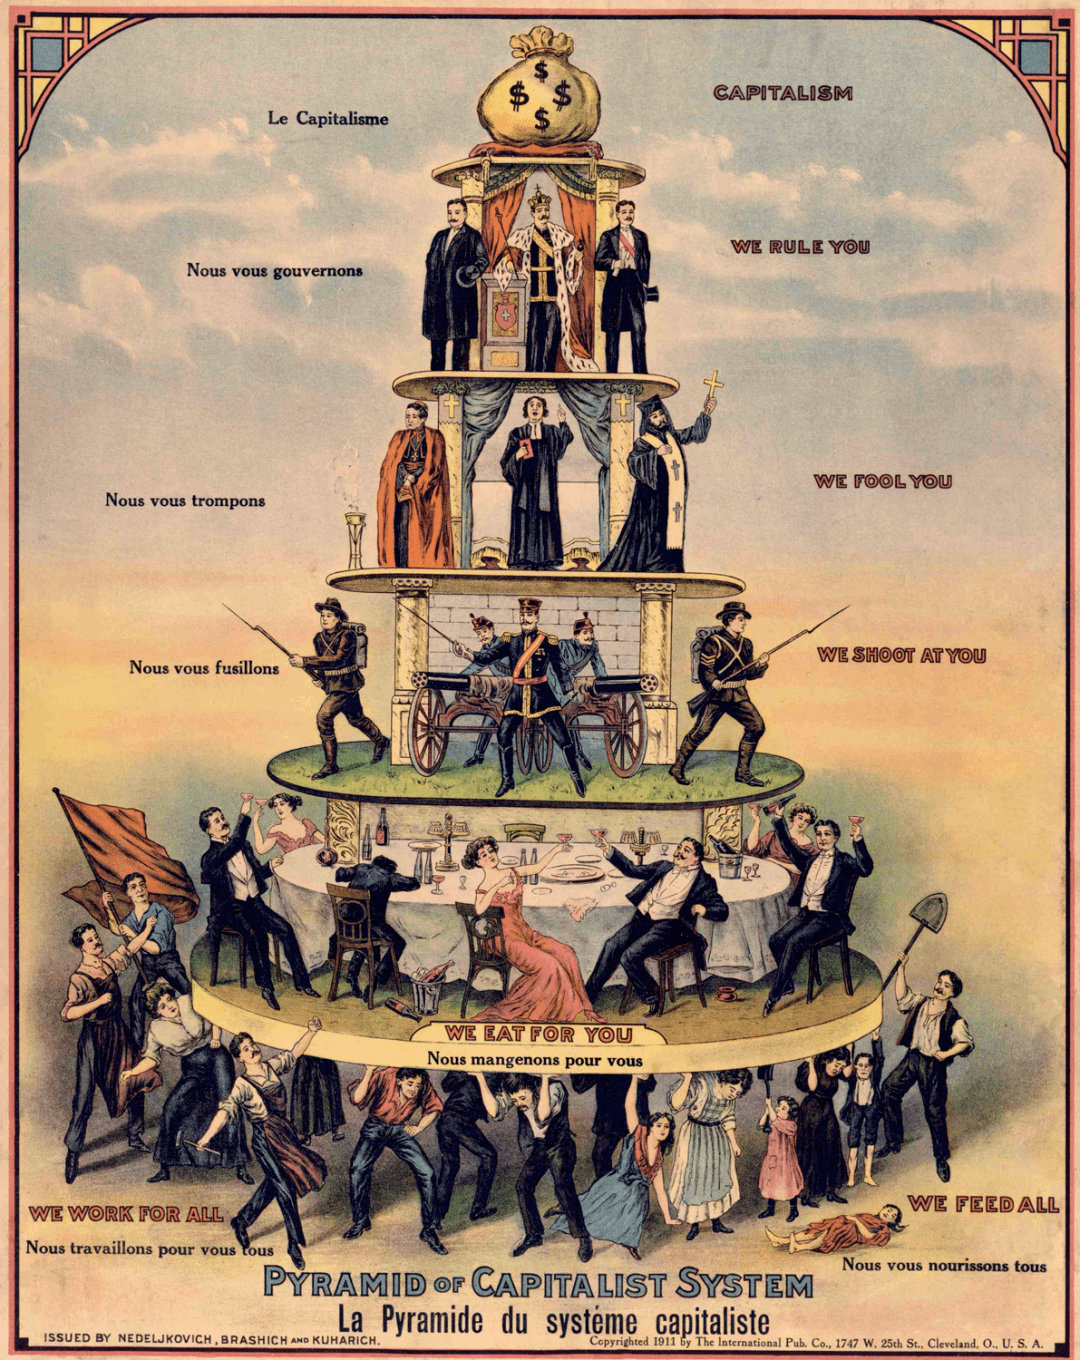 位于顶层的钱袋代表资本主义,我们统治你们这一层代表着王室和统治